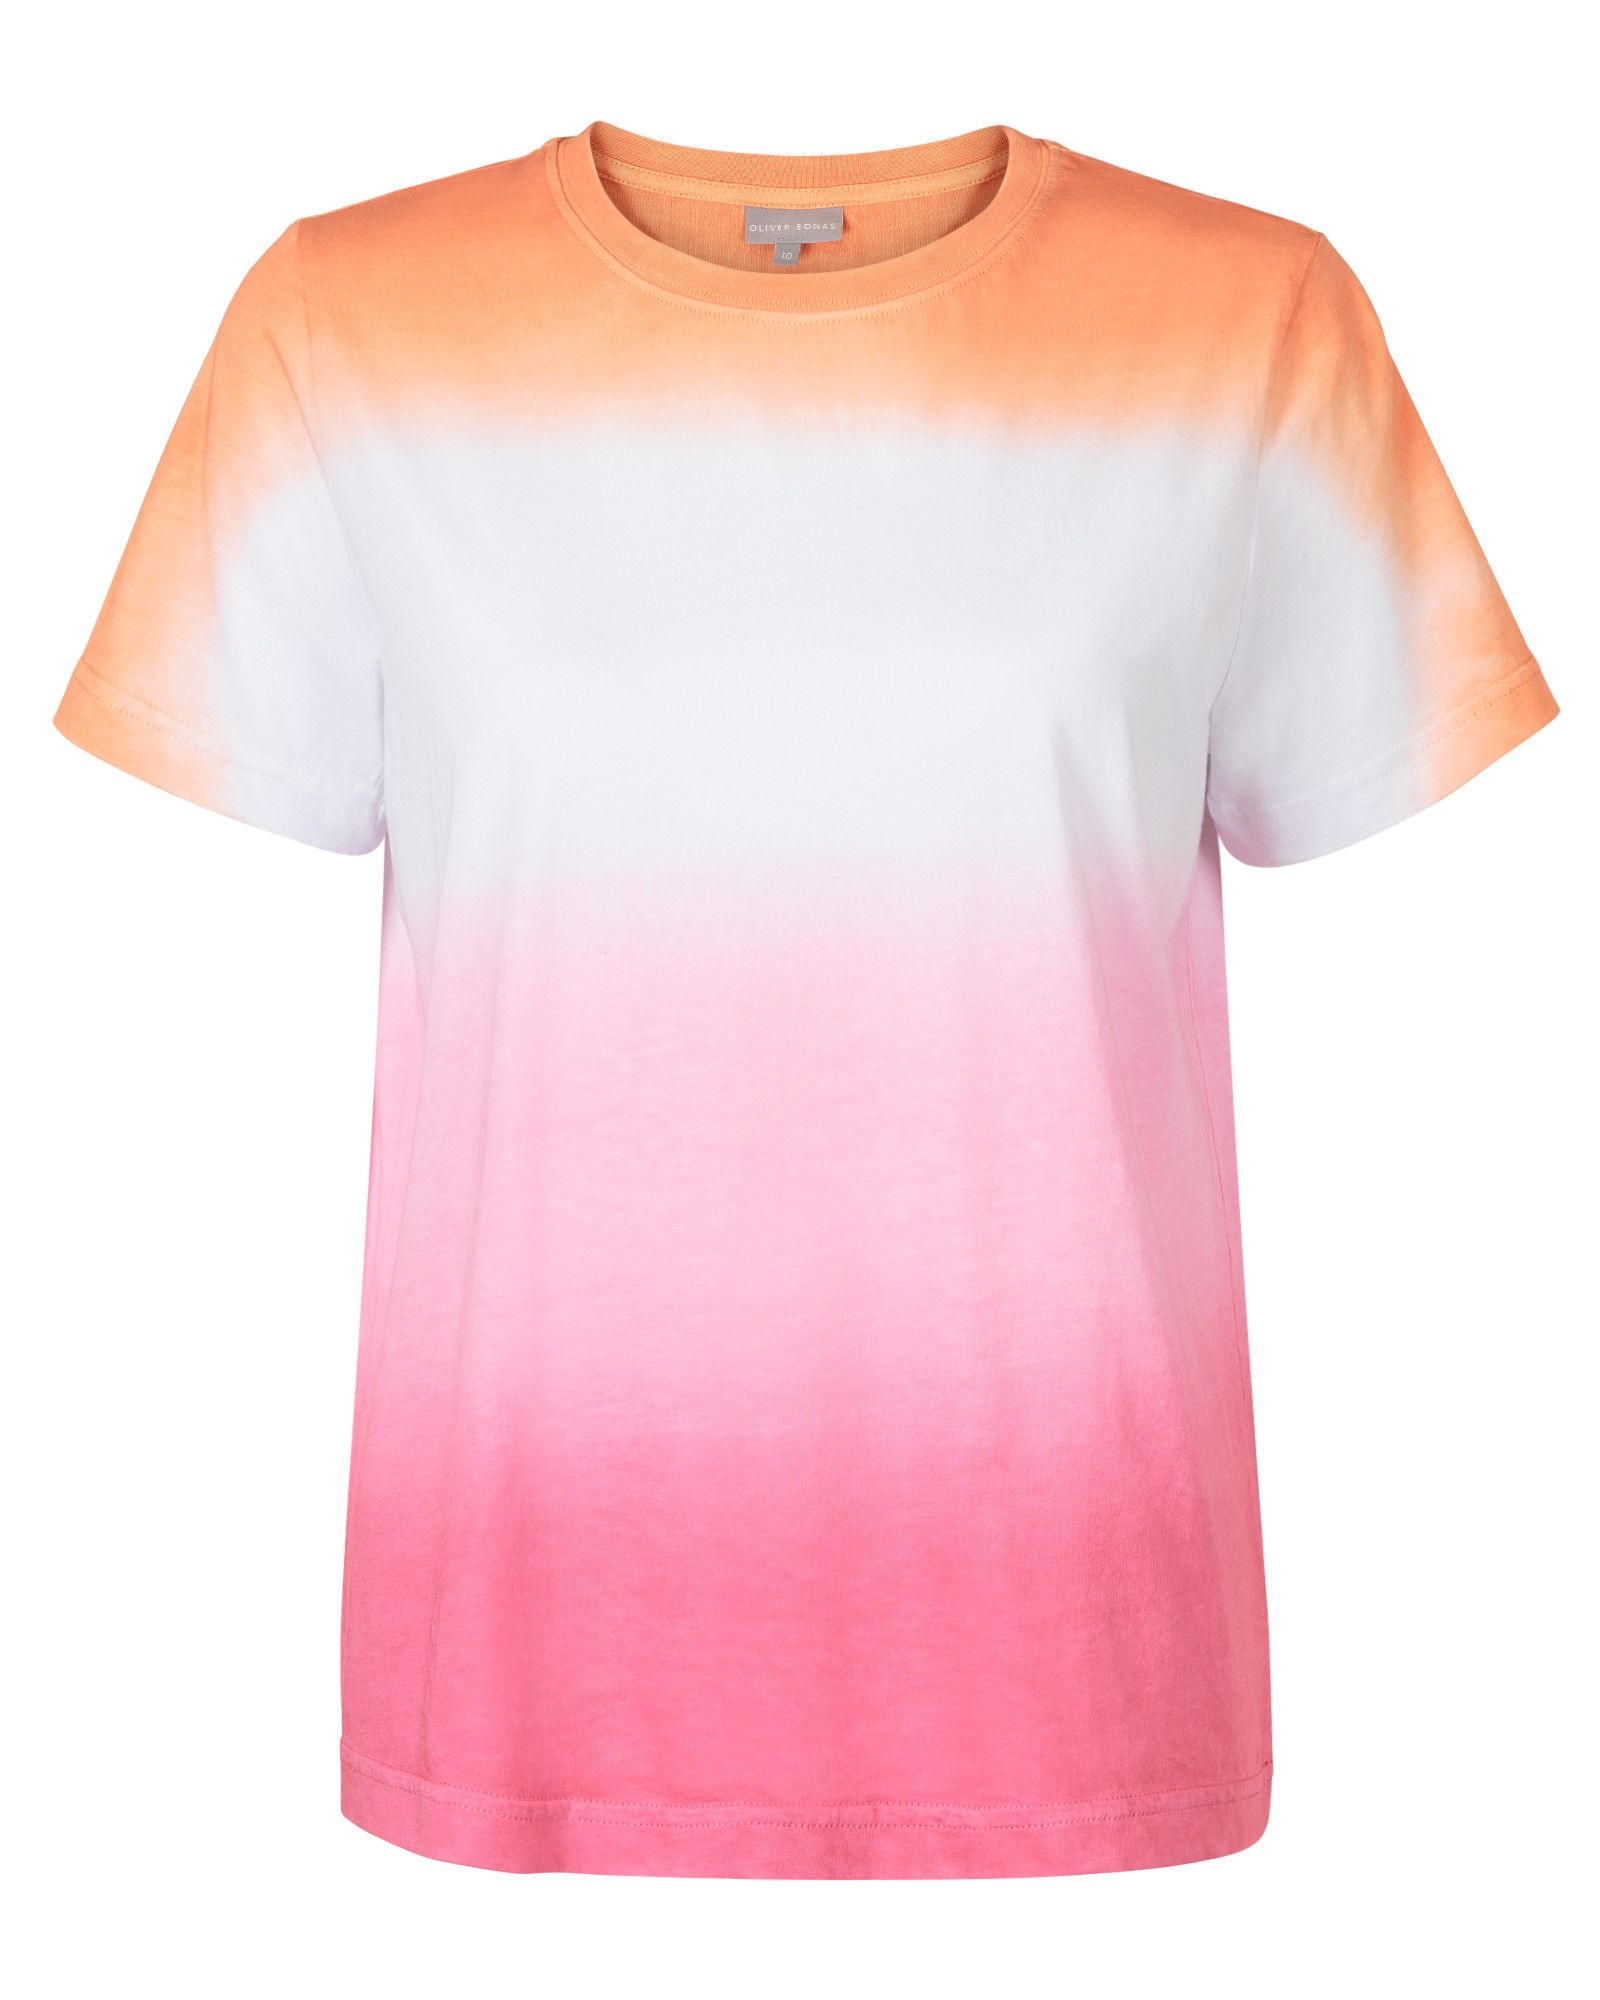 Dip Dye Orange Pink T Shirt